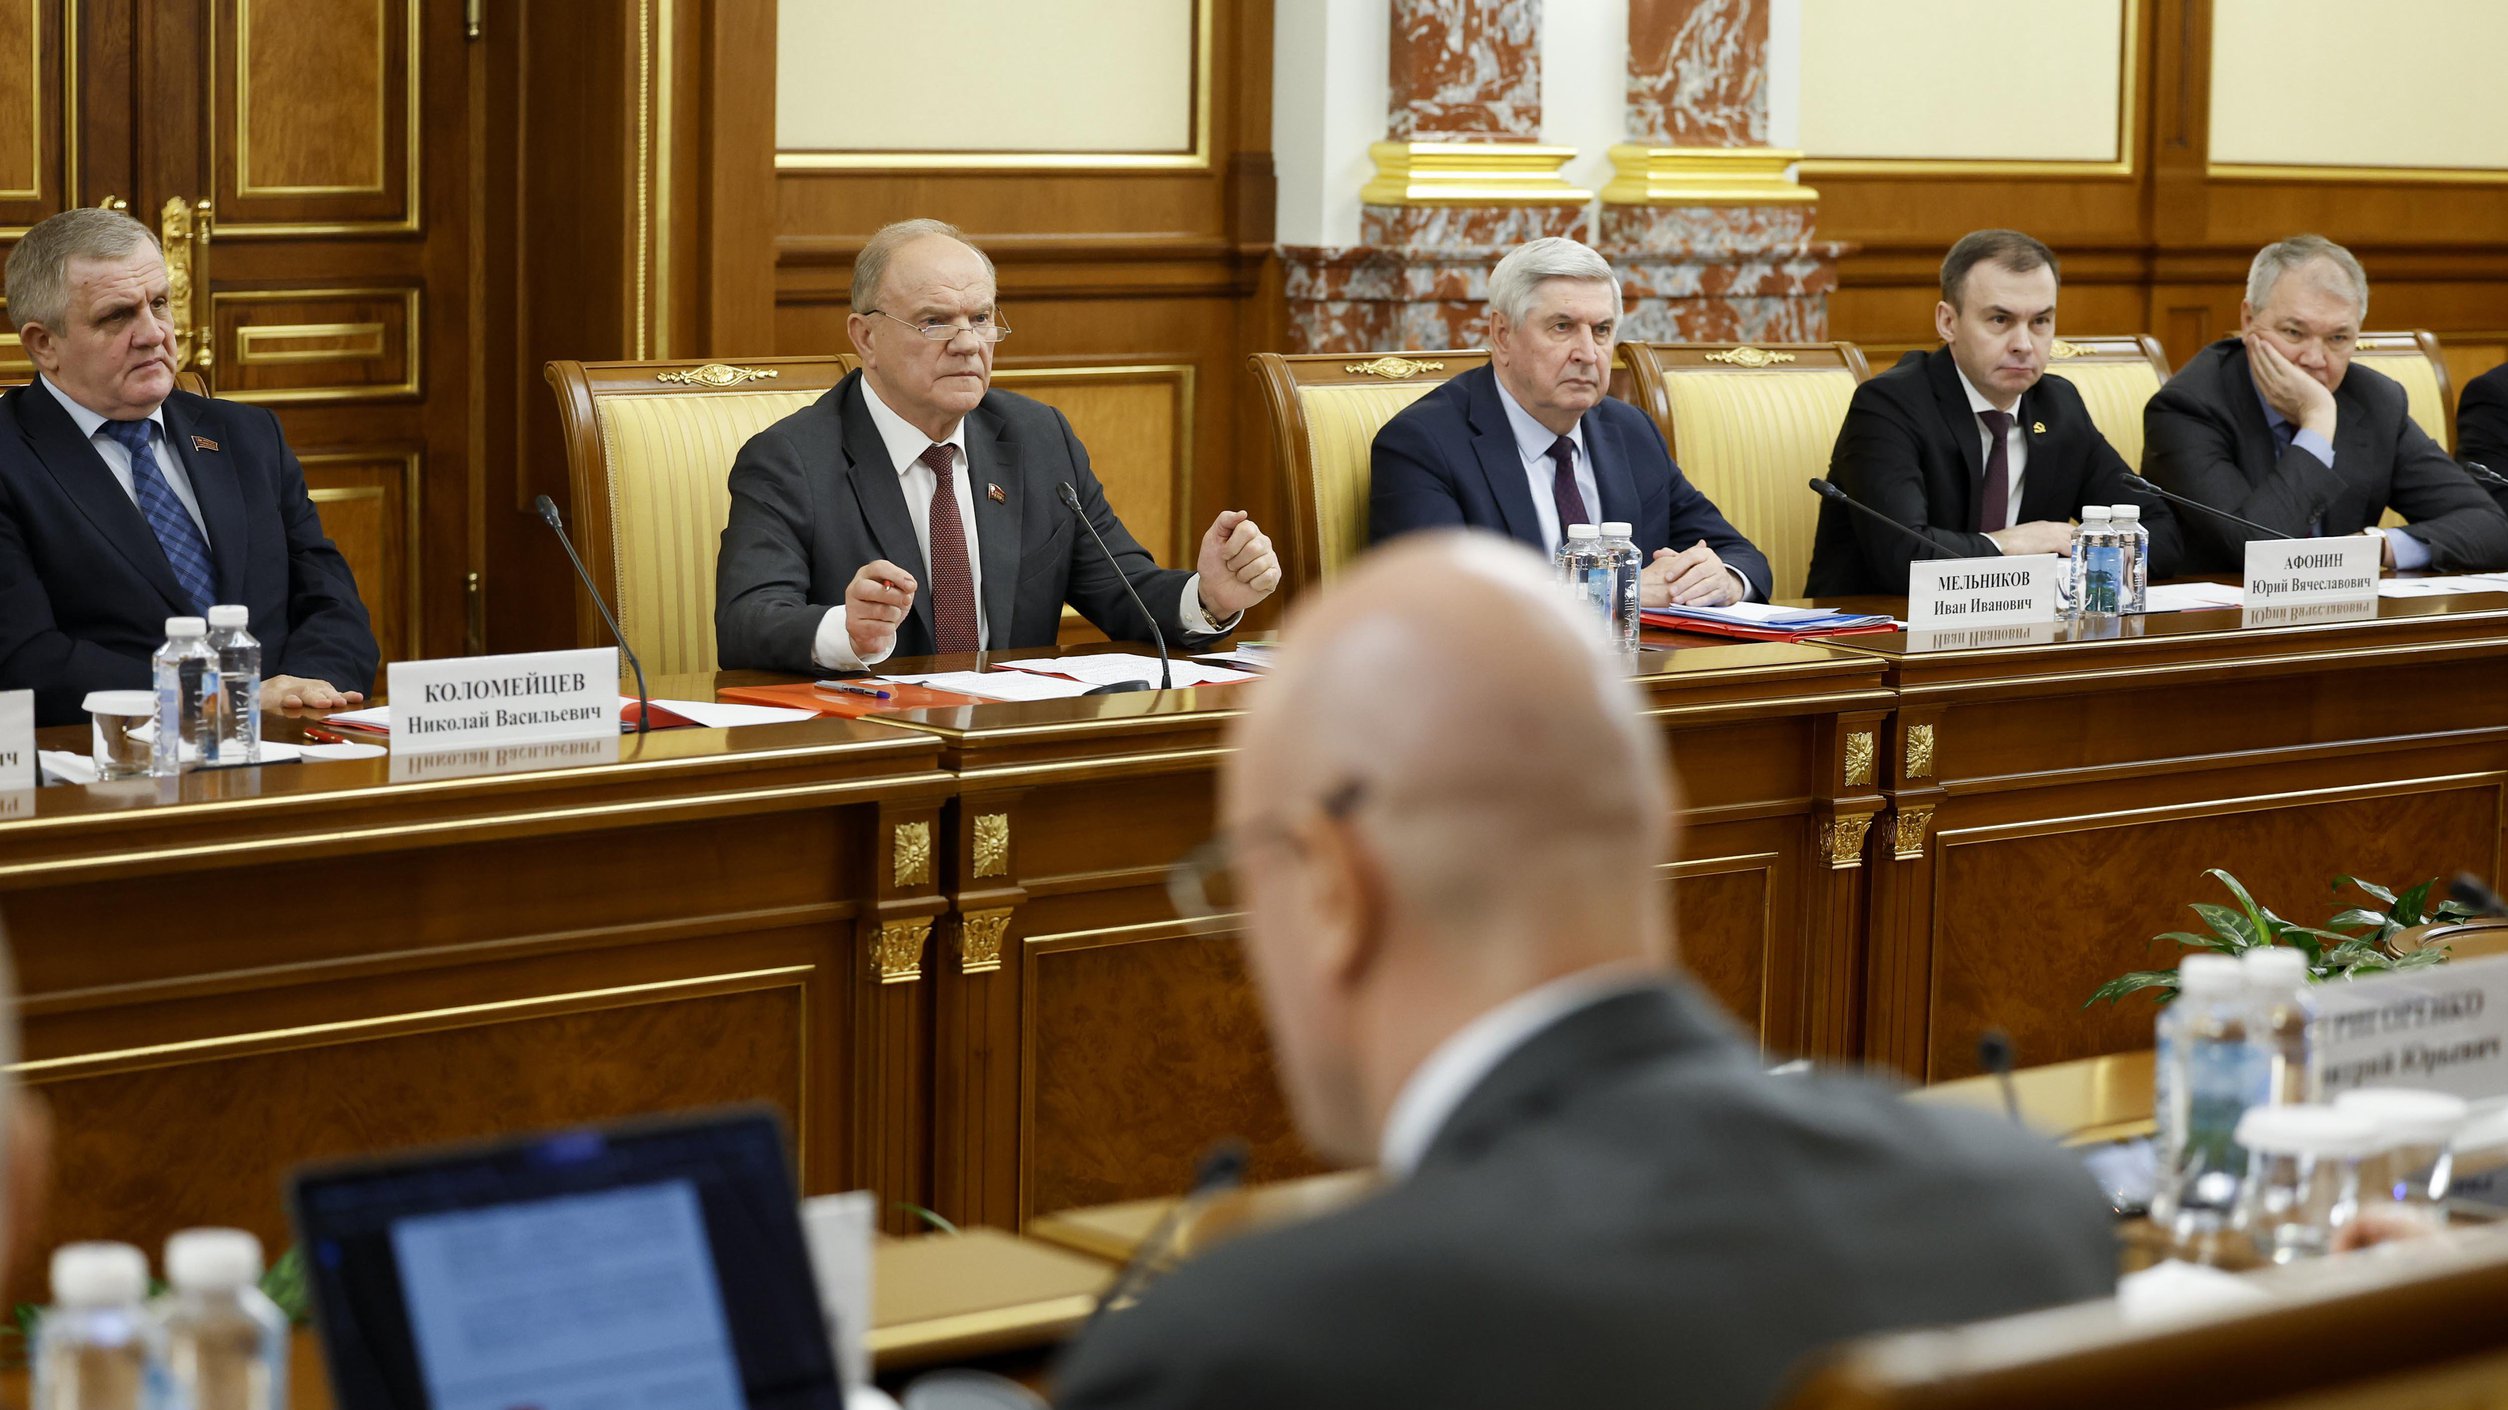 фото к статье: Состоялась встреча Михаила Мишустина с членами фракции КПРФ